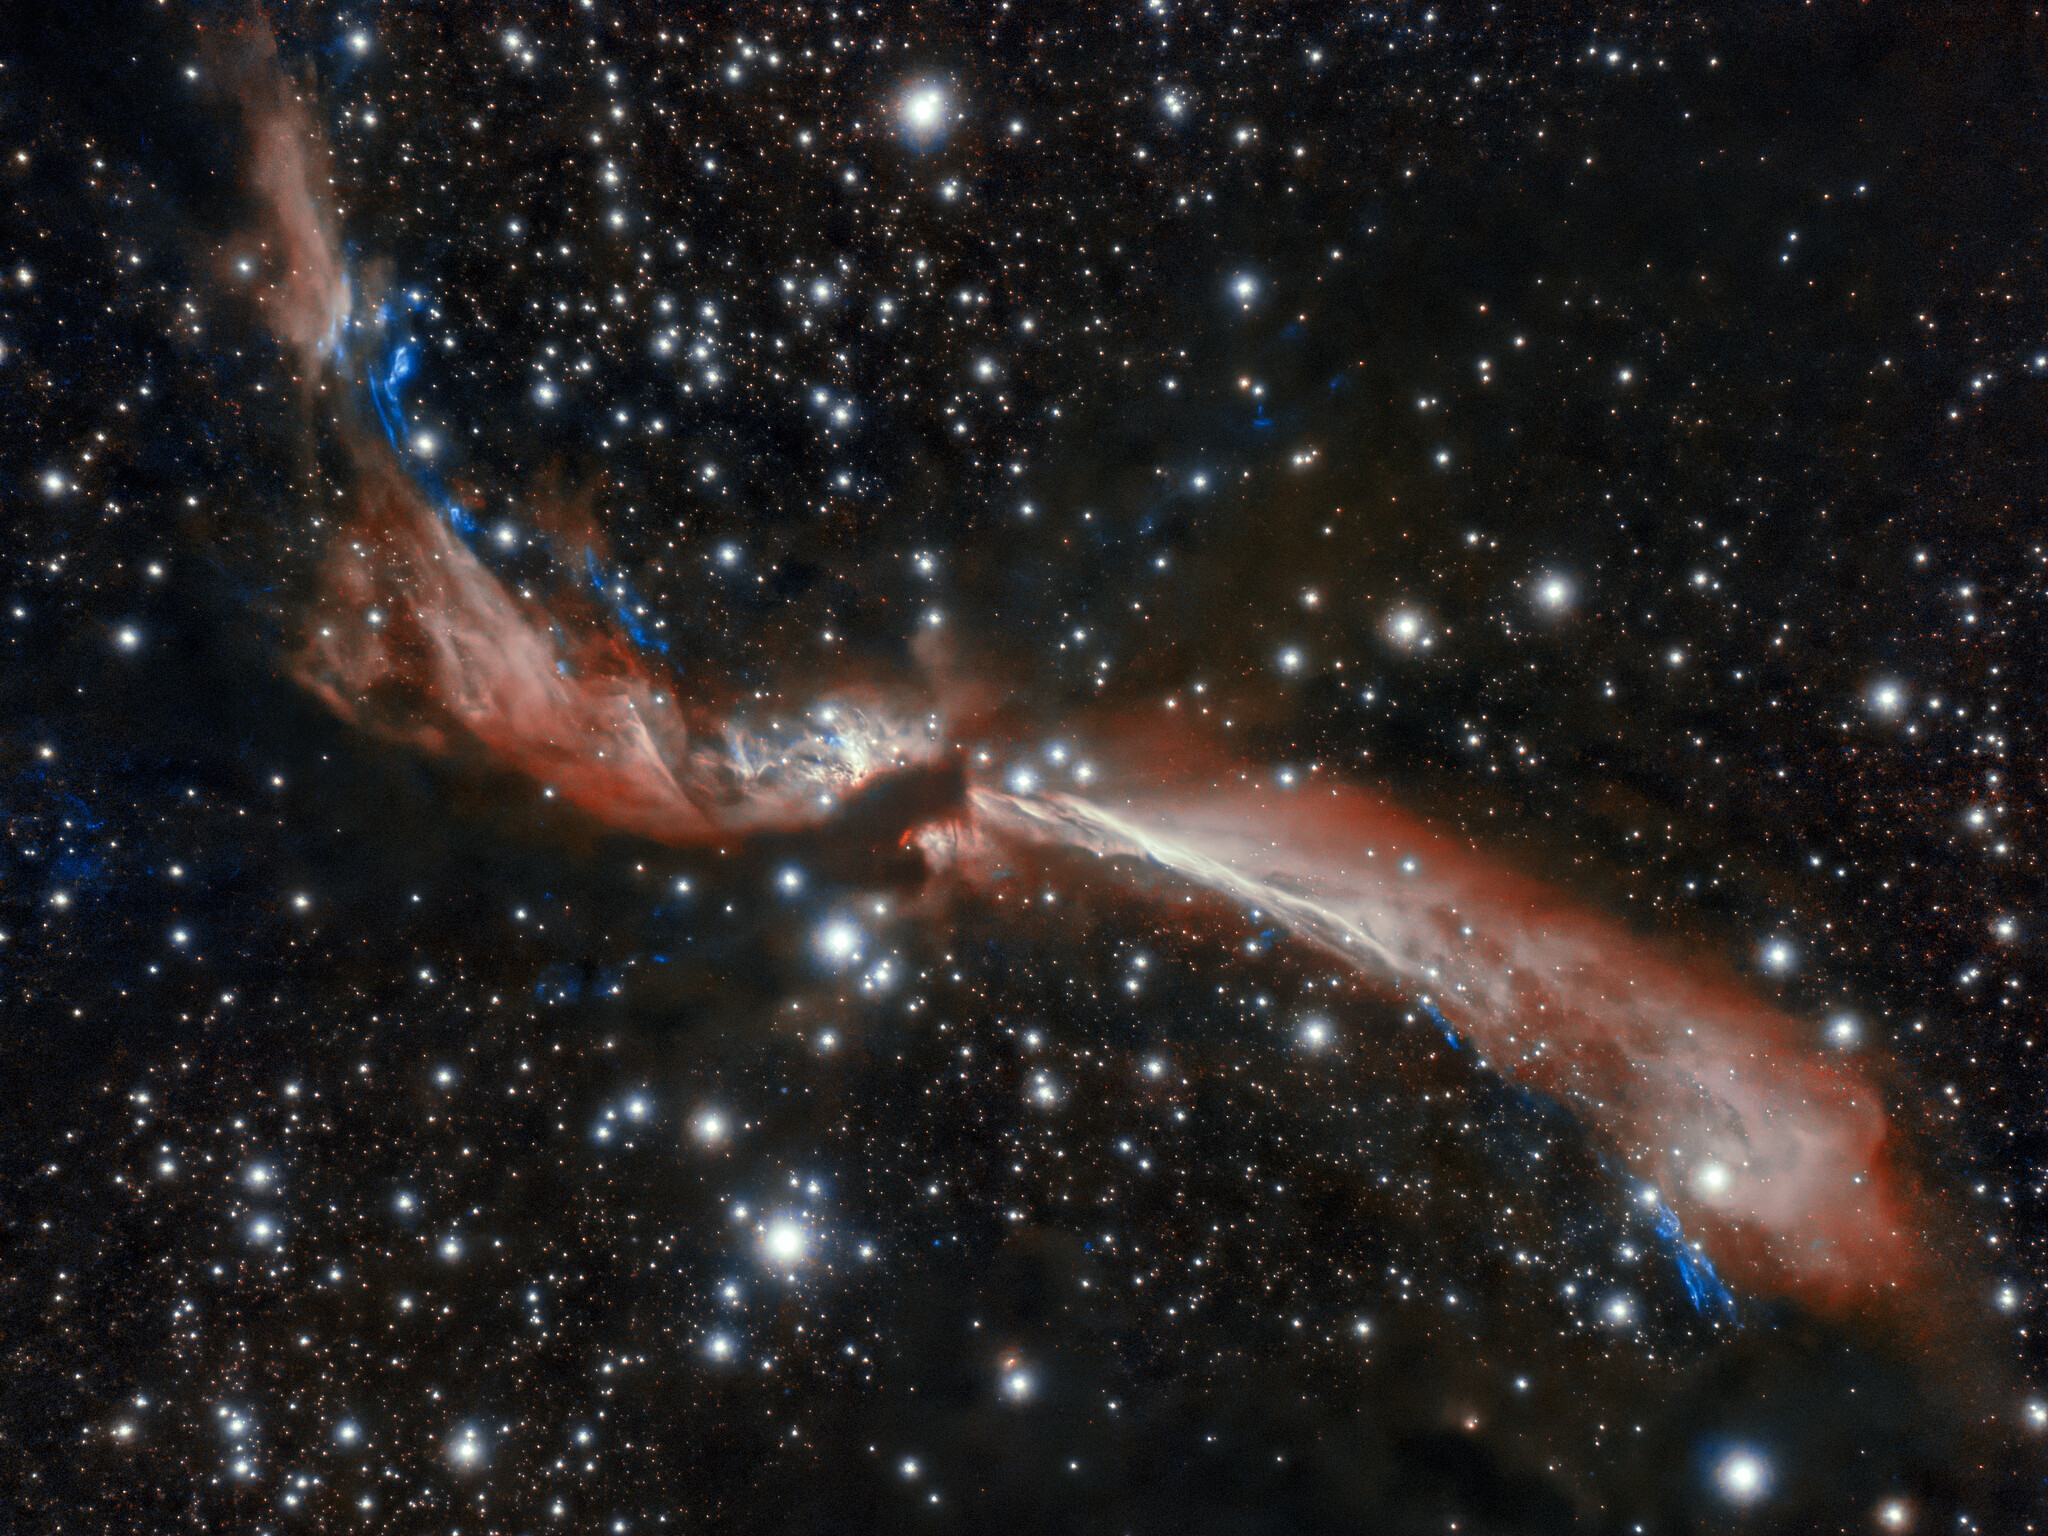 Le jeune jet stellaire sinueux, MHO 2147, semble serpenter à travers un champ d'étoiles dans cette image capturée au Chili par l'Observatoire international Gemini, un programme du NOIRLab de la NSF.&nbsp;©&nbsp;International Gemini Observatory, NOIRLab, NSF, AURA